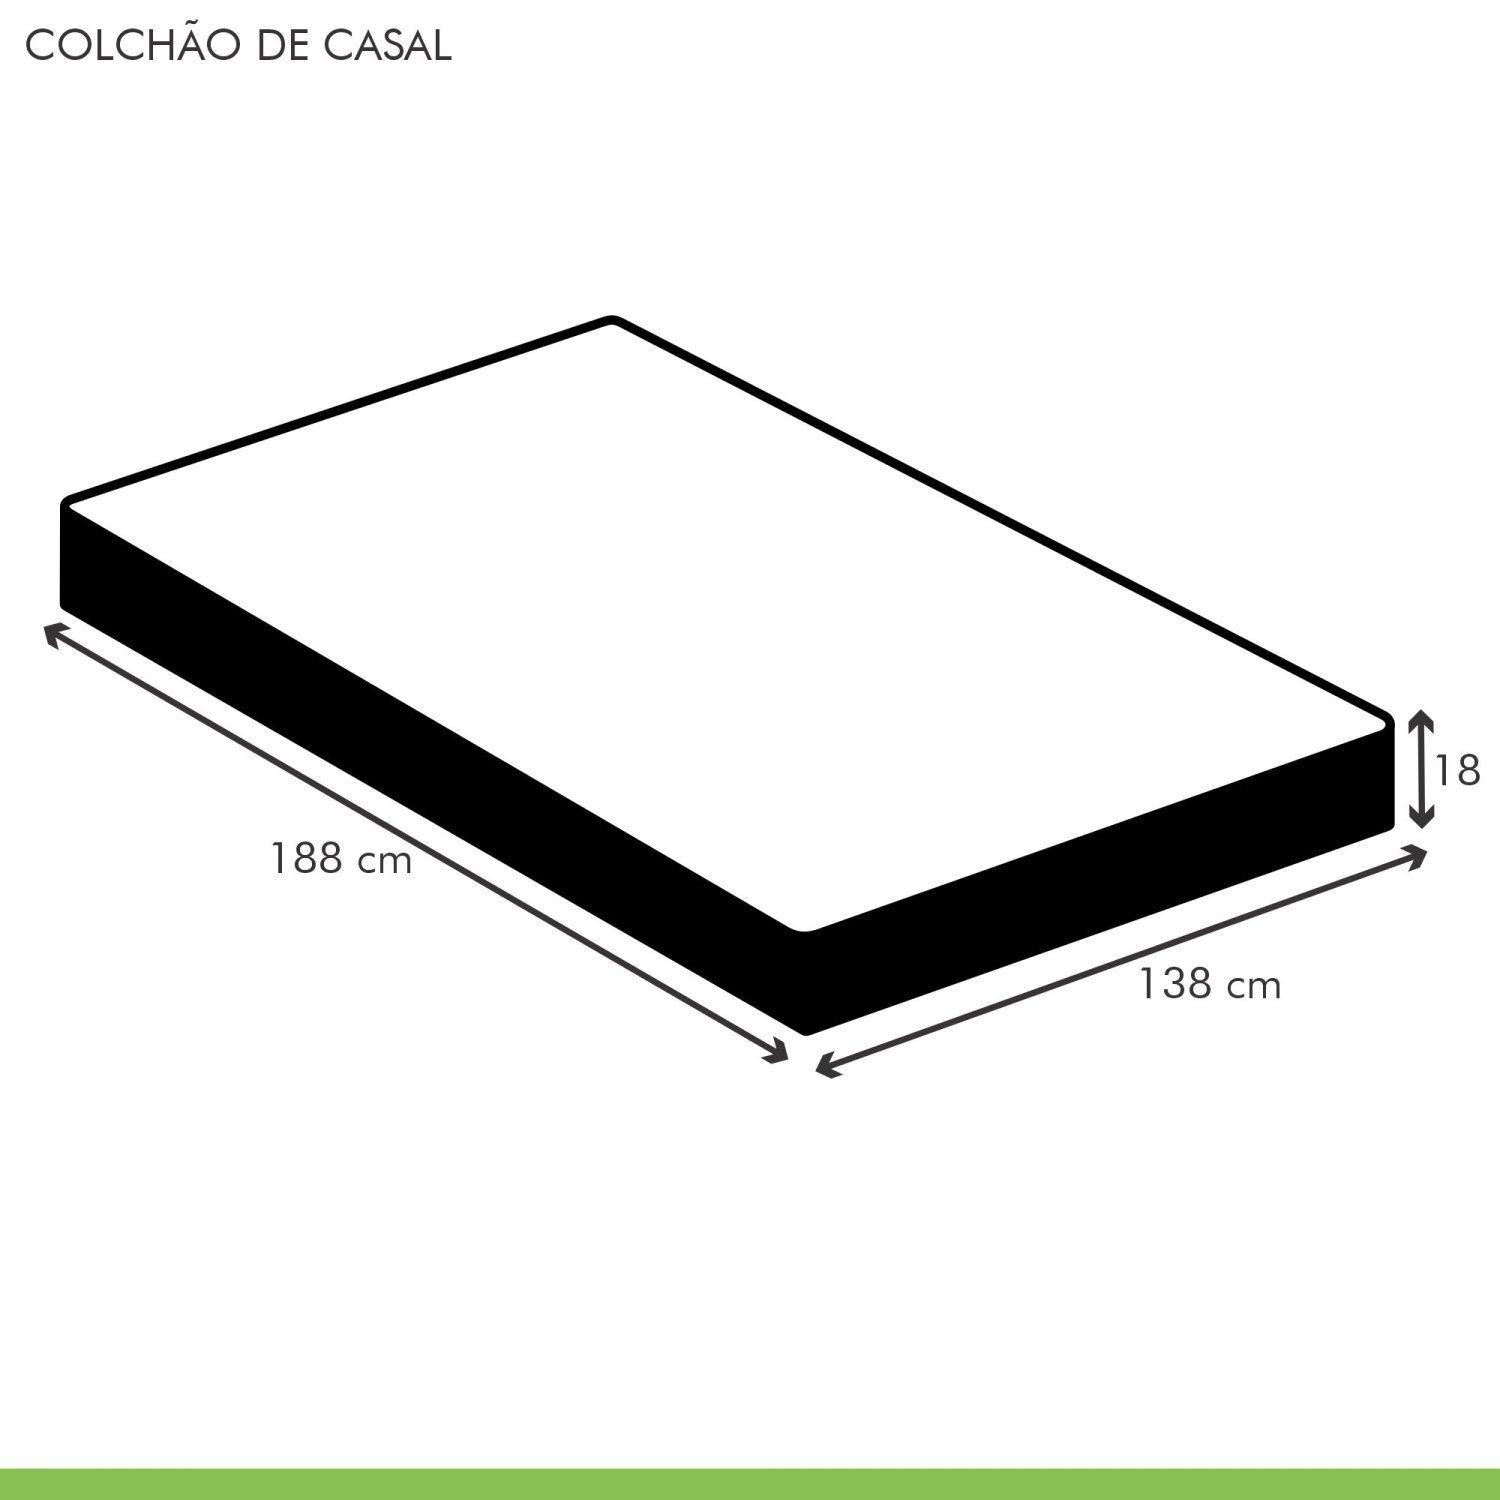 Colchão Casal Unique D45 Duoface 18x138x188cm  - 5